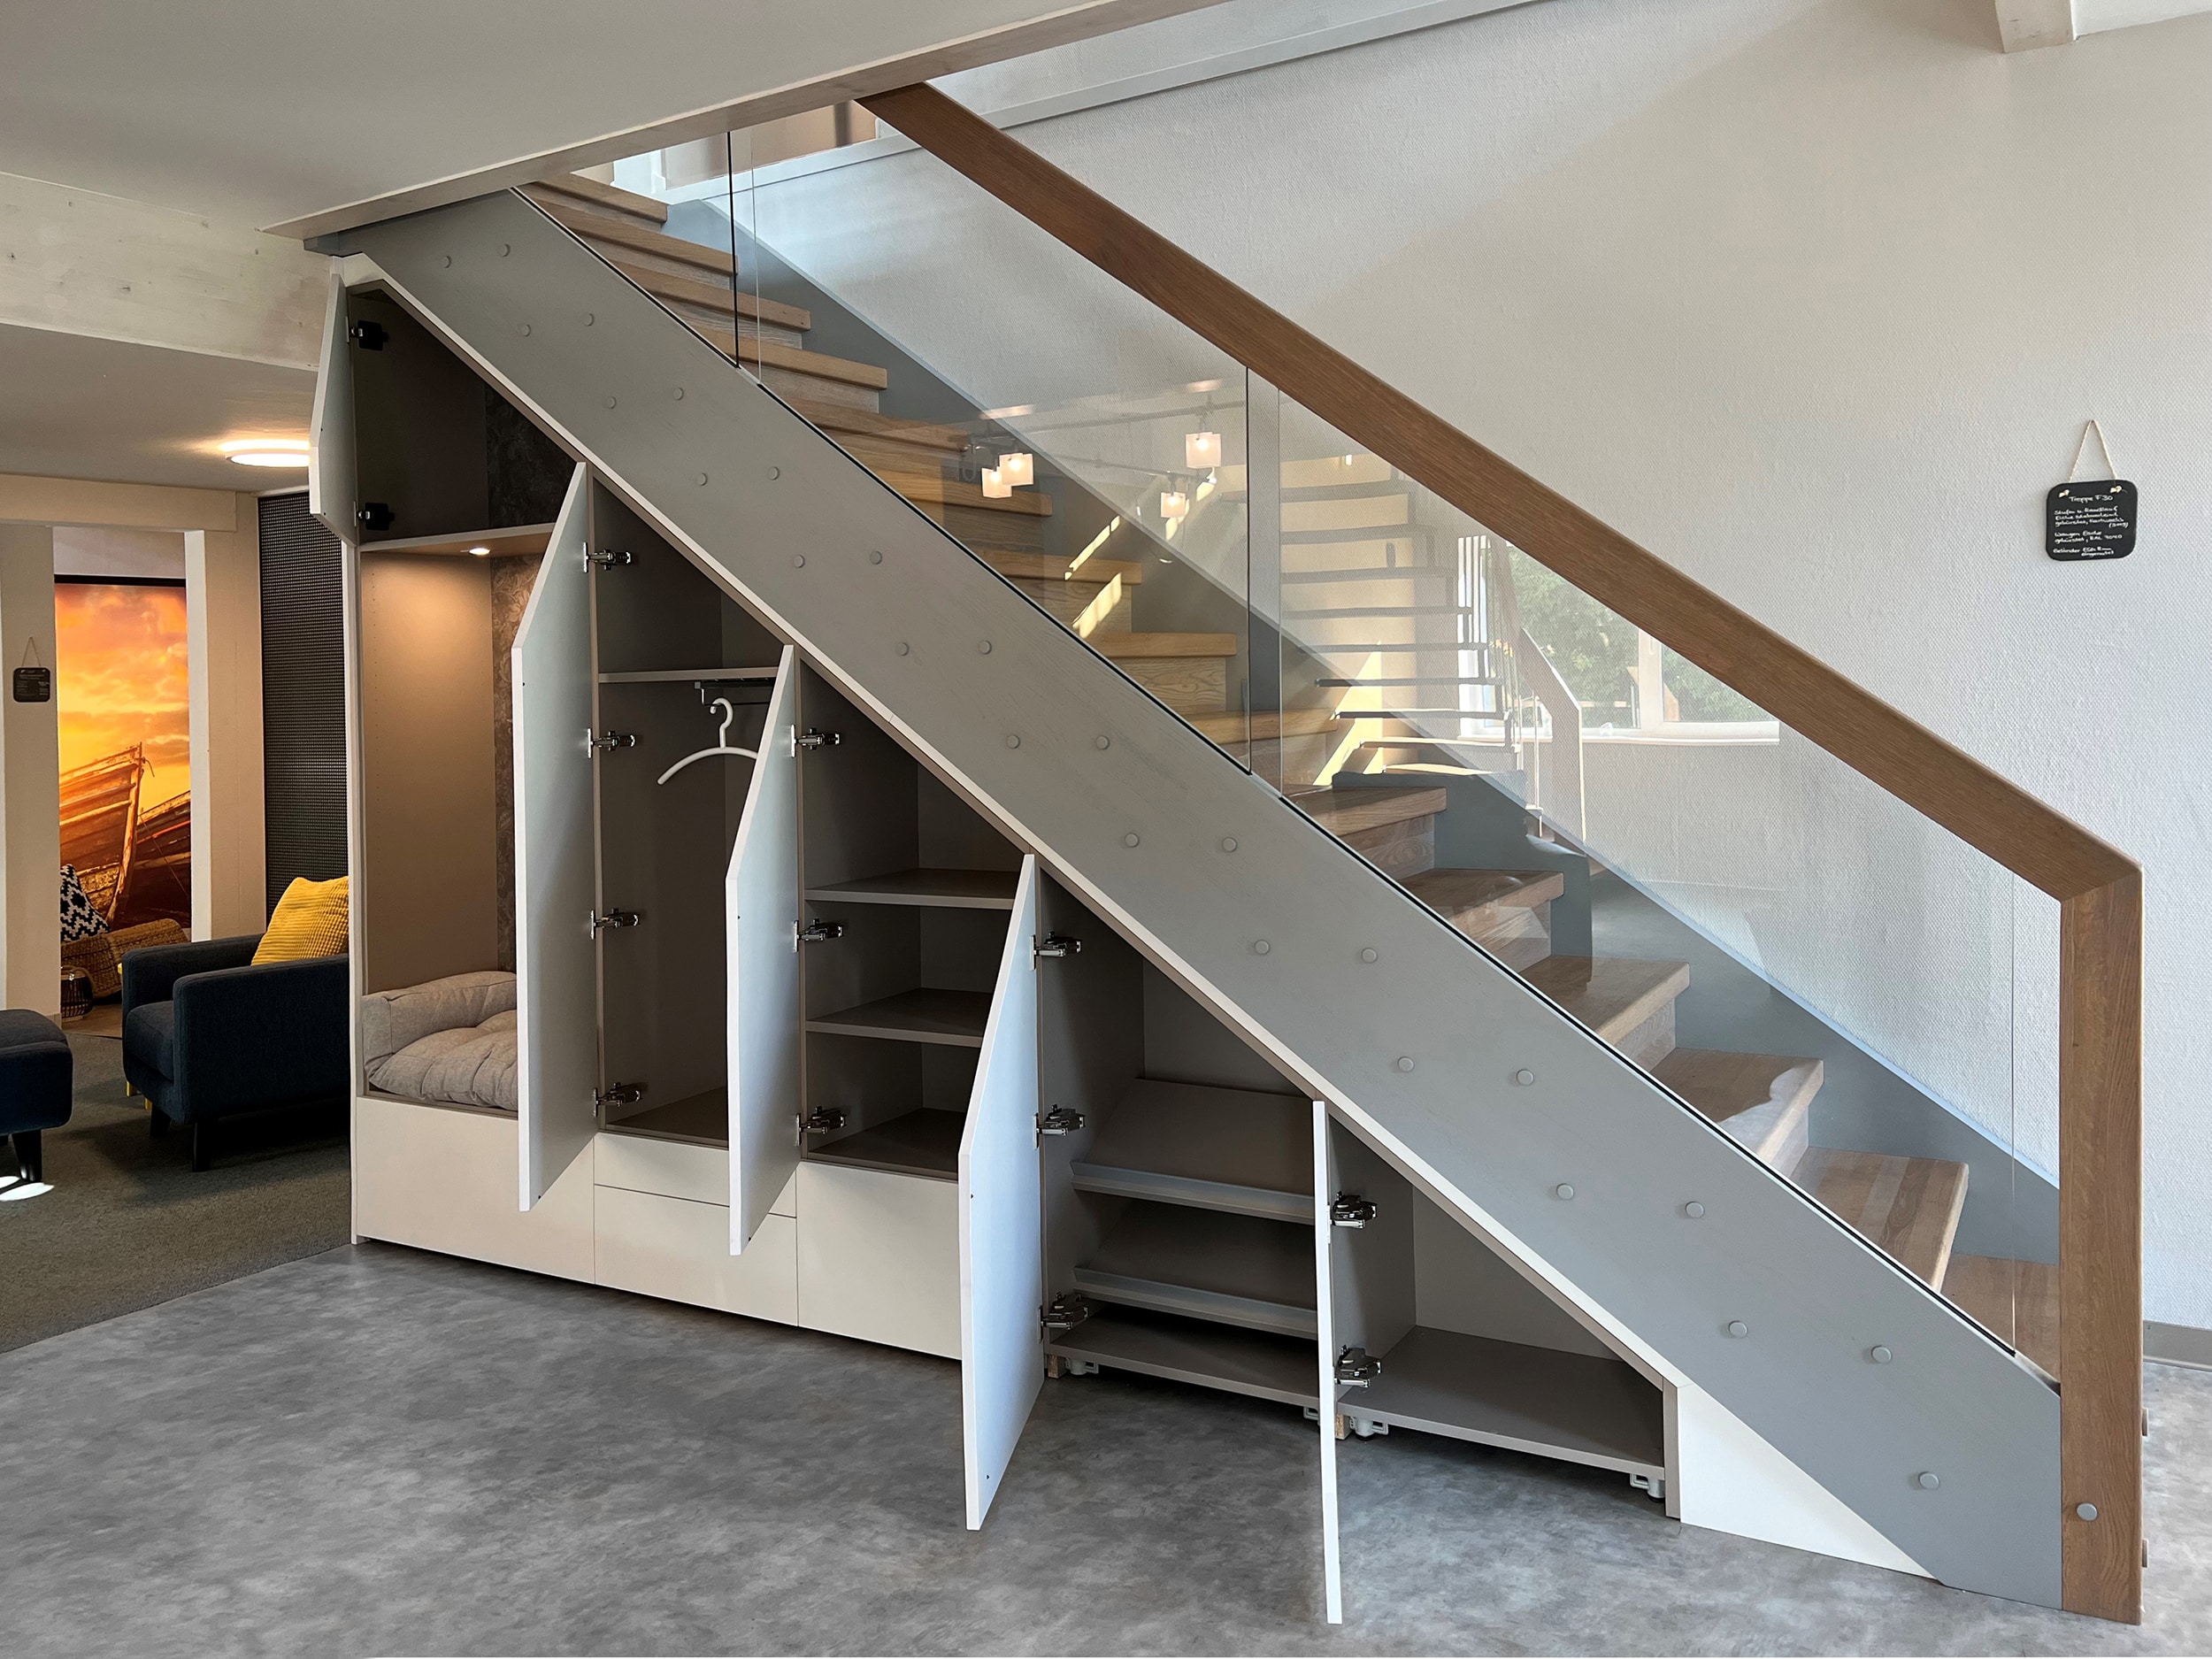 Der Raum unter den Treppenstufen lässt sich vielseitig nutzen.   Ein genau eingepasster Schrank kann beispielsweise als Garderobe dienen.